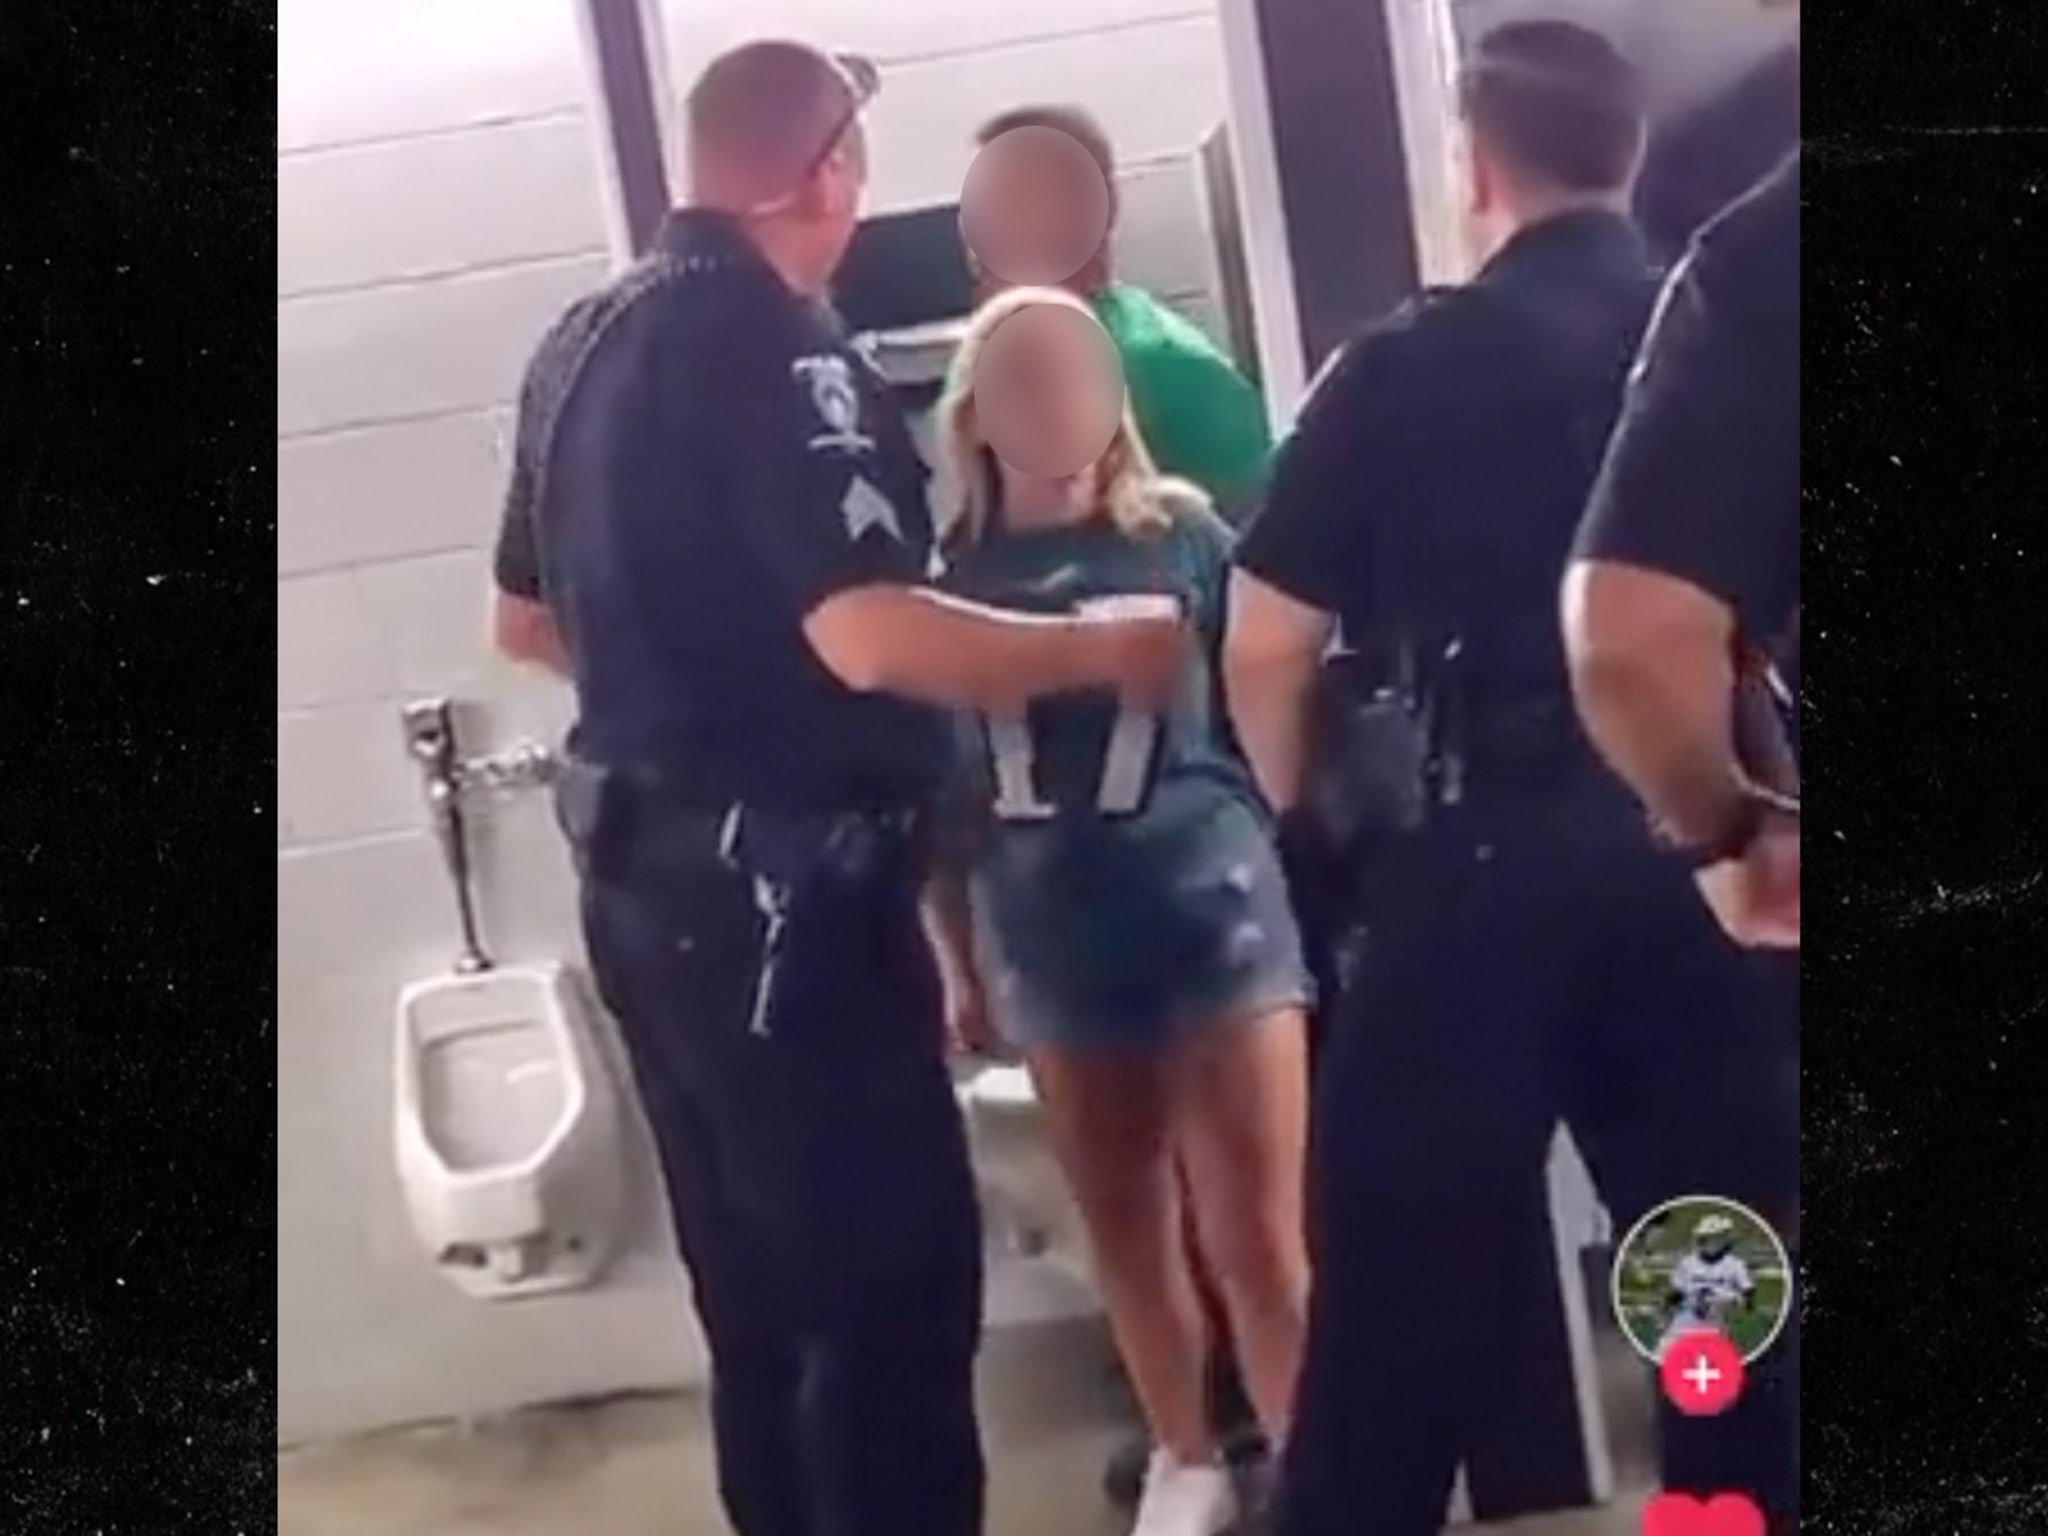 Eagles Fans Not Arrested For Alleged Bathroom Sex At NFL Stadium, Cops